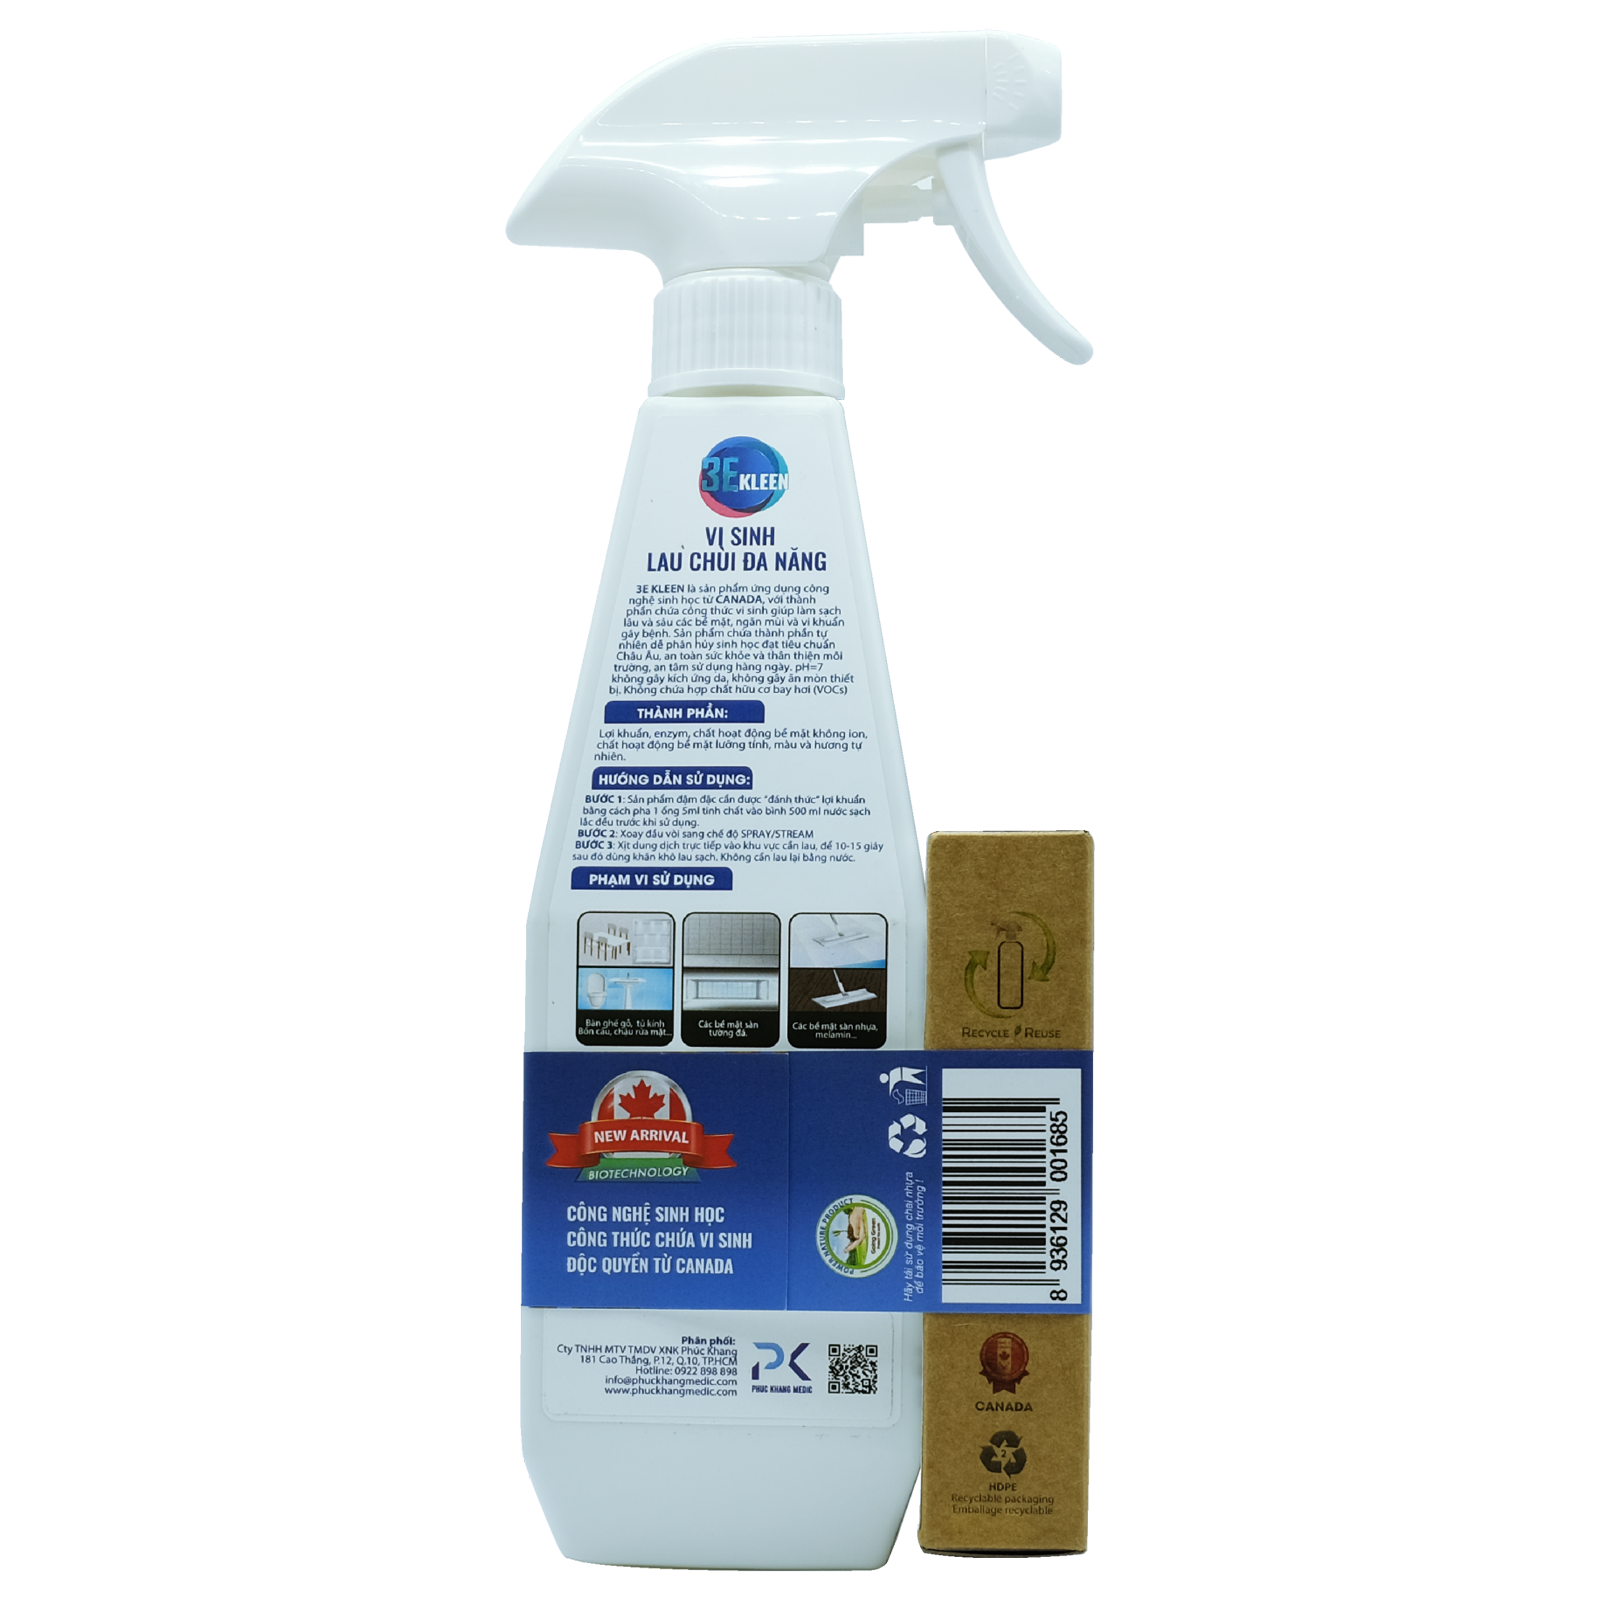 Bộ sản phẩm lau chùi đa năng sinh học 3E KLEEN - 01 chai 500ml và 01 ống 5ml dung dịch đậm đặc